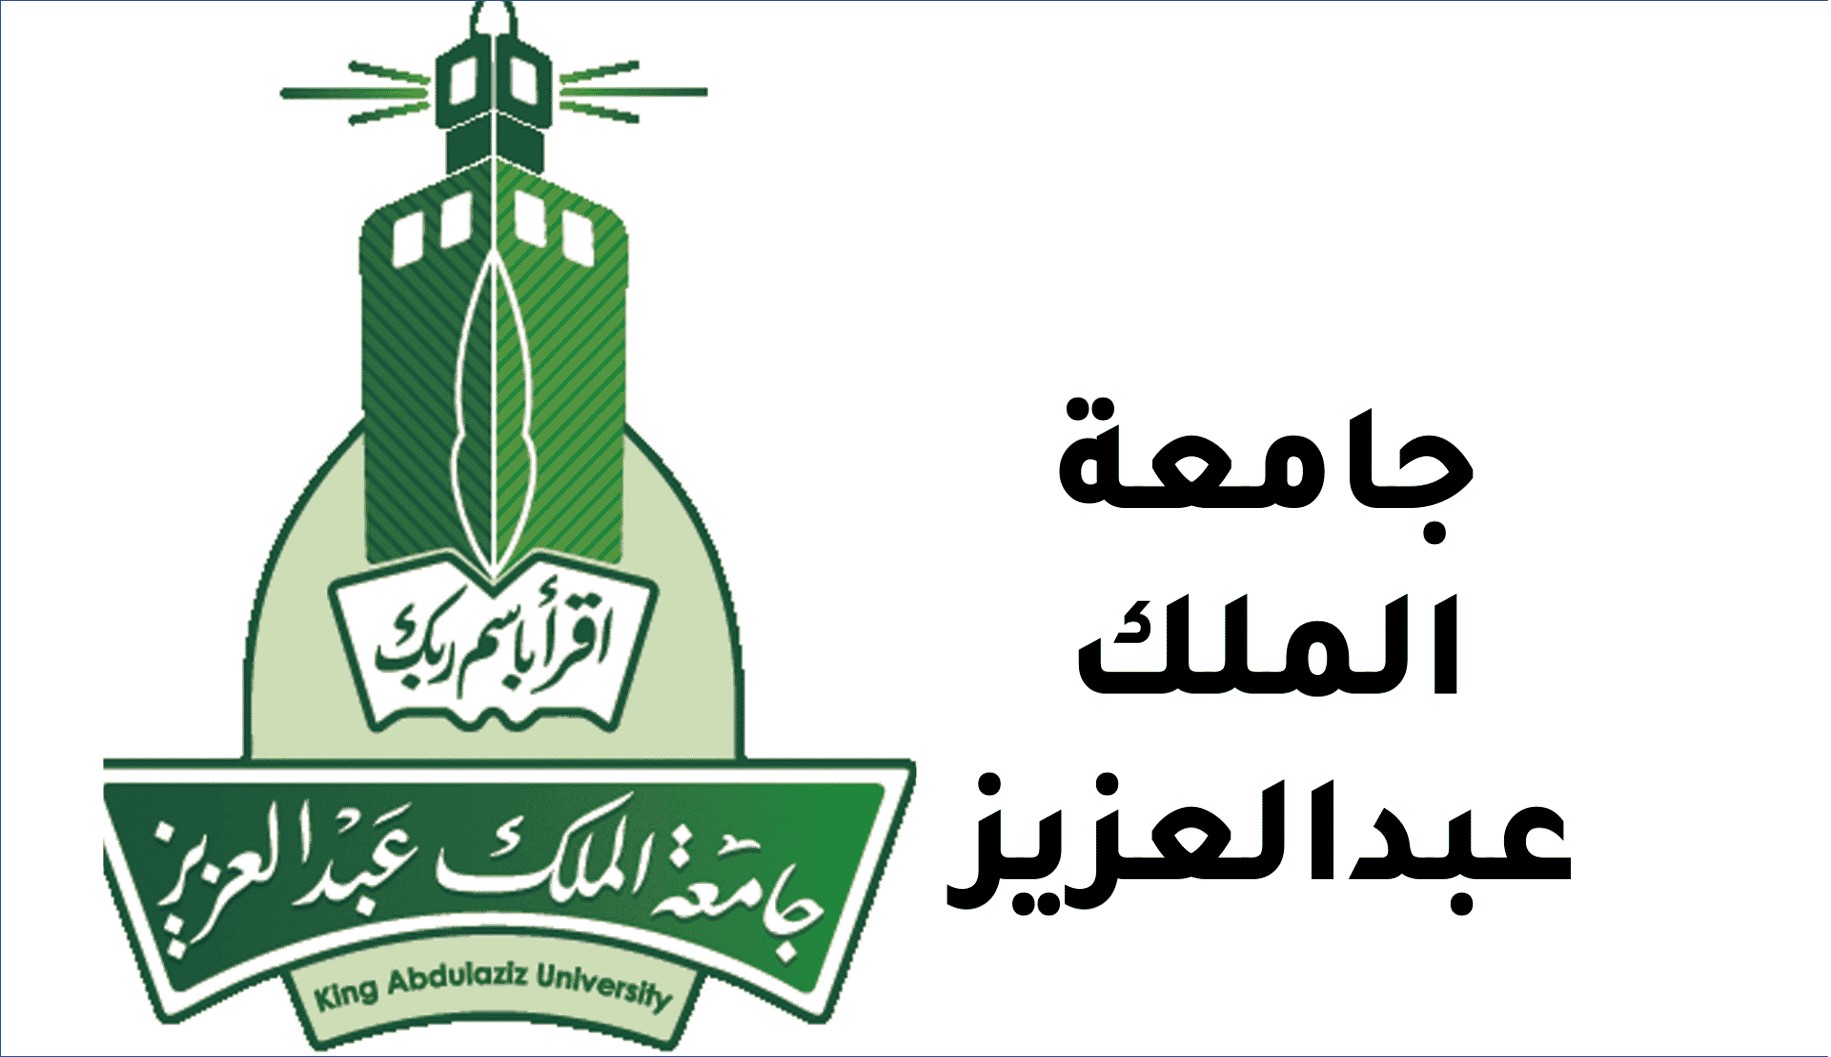 جامعة الملك عبدالعزيز تعلن عن وظائف شاغرة للرجال والنساء